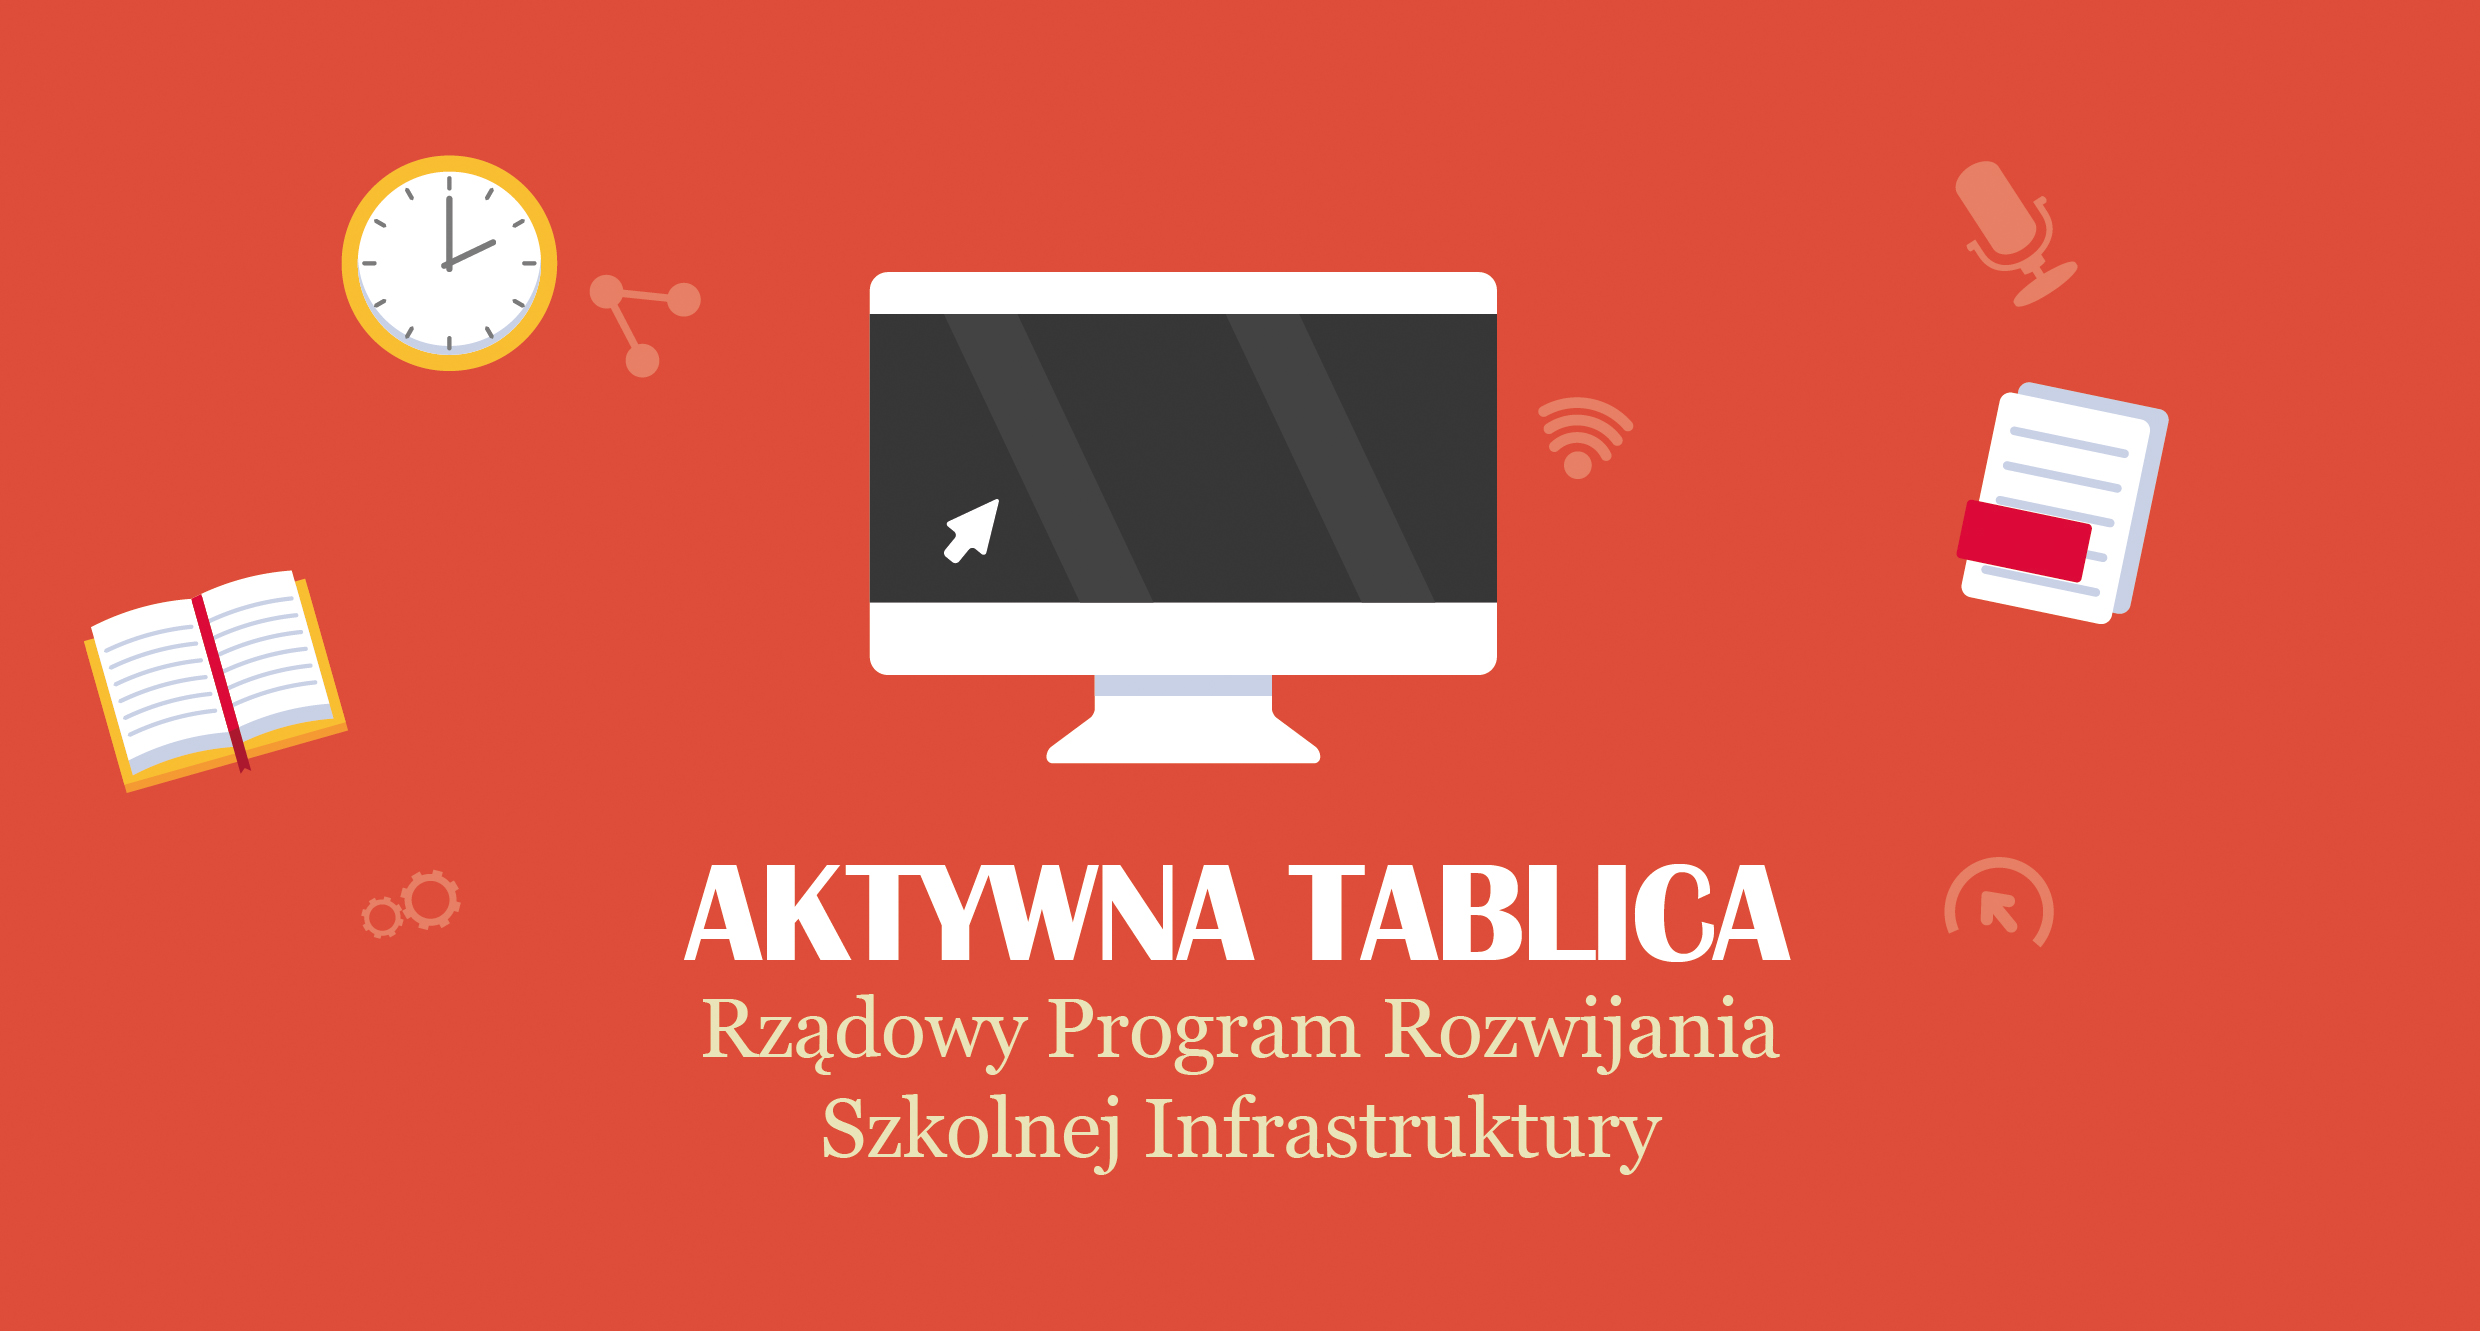 Aktywna Tablica - rządowy program rozwijania szkolnej infrastruktury oraz kompetencji uczniów i nauczycieli w zakresie technologii informacyjno-komunikacyjnych.